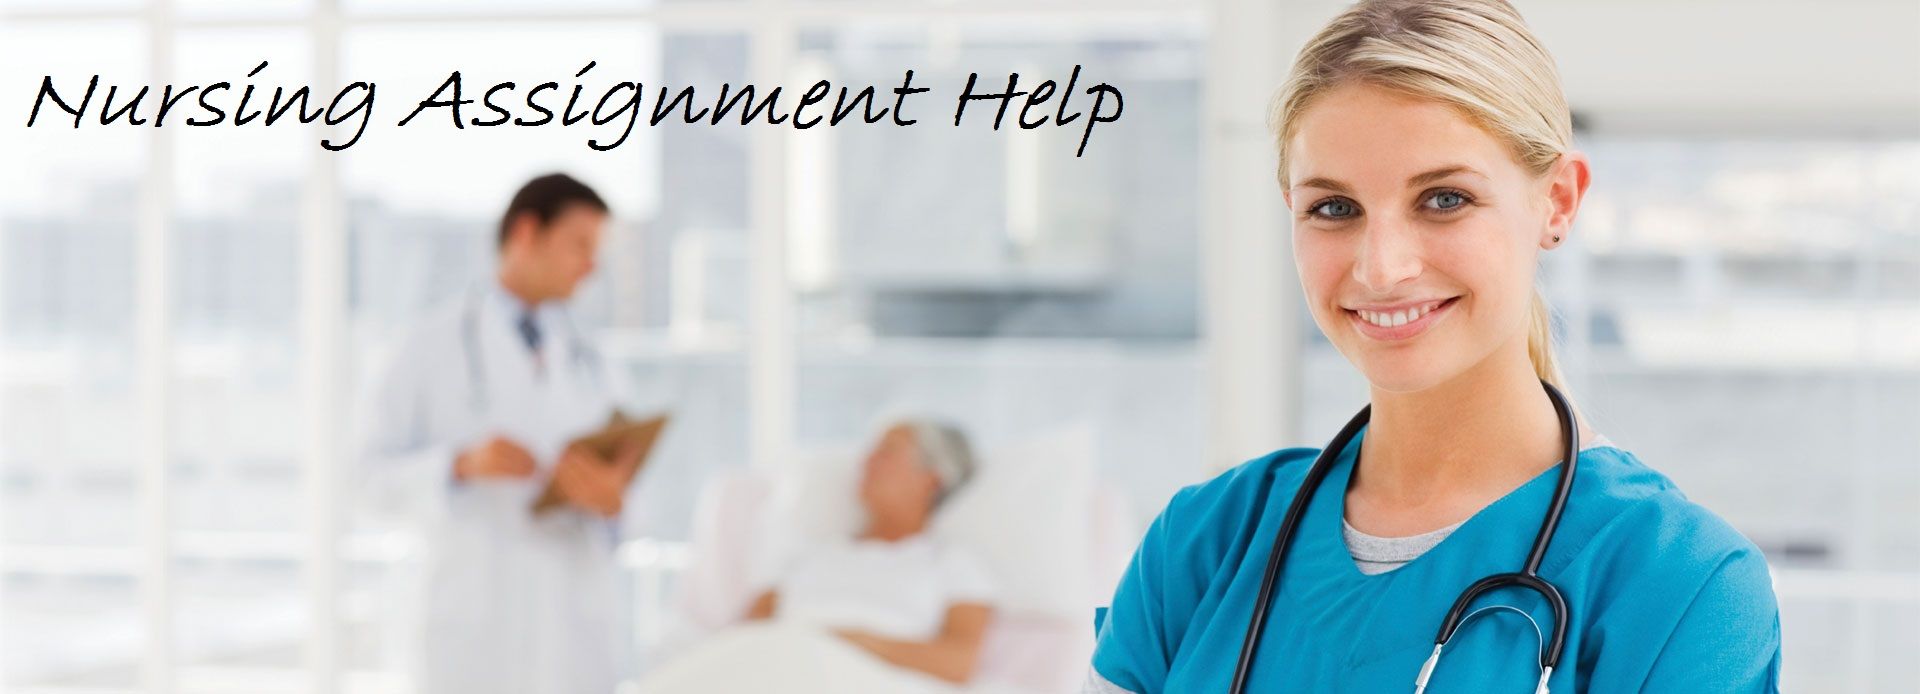 nursing assignment help2